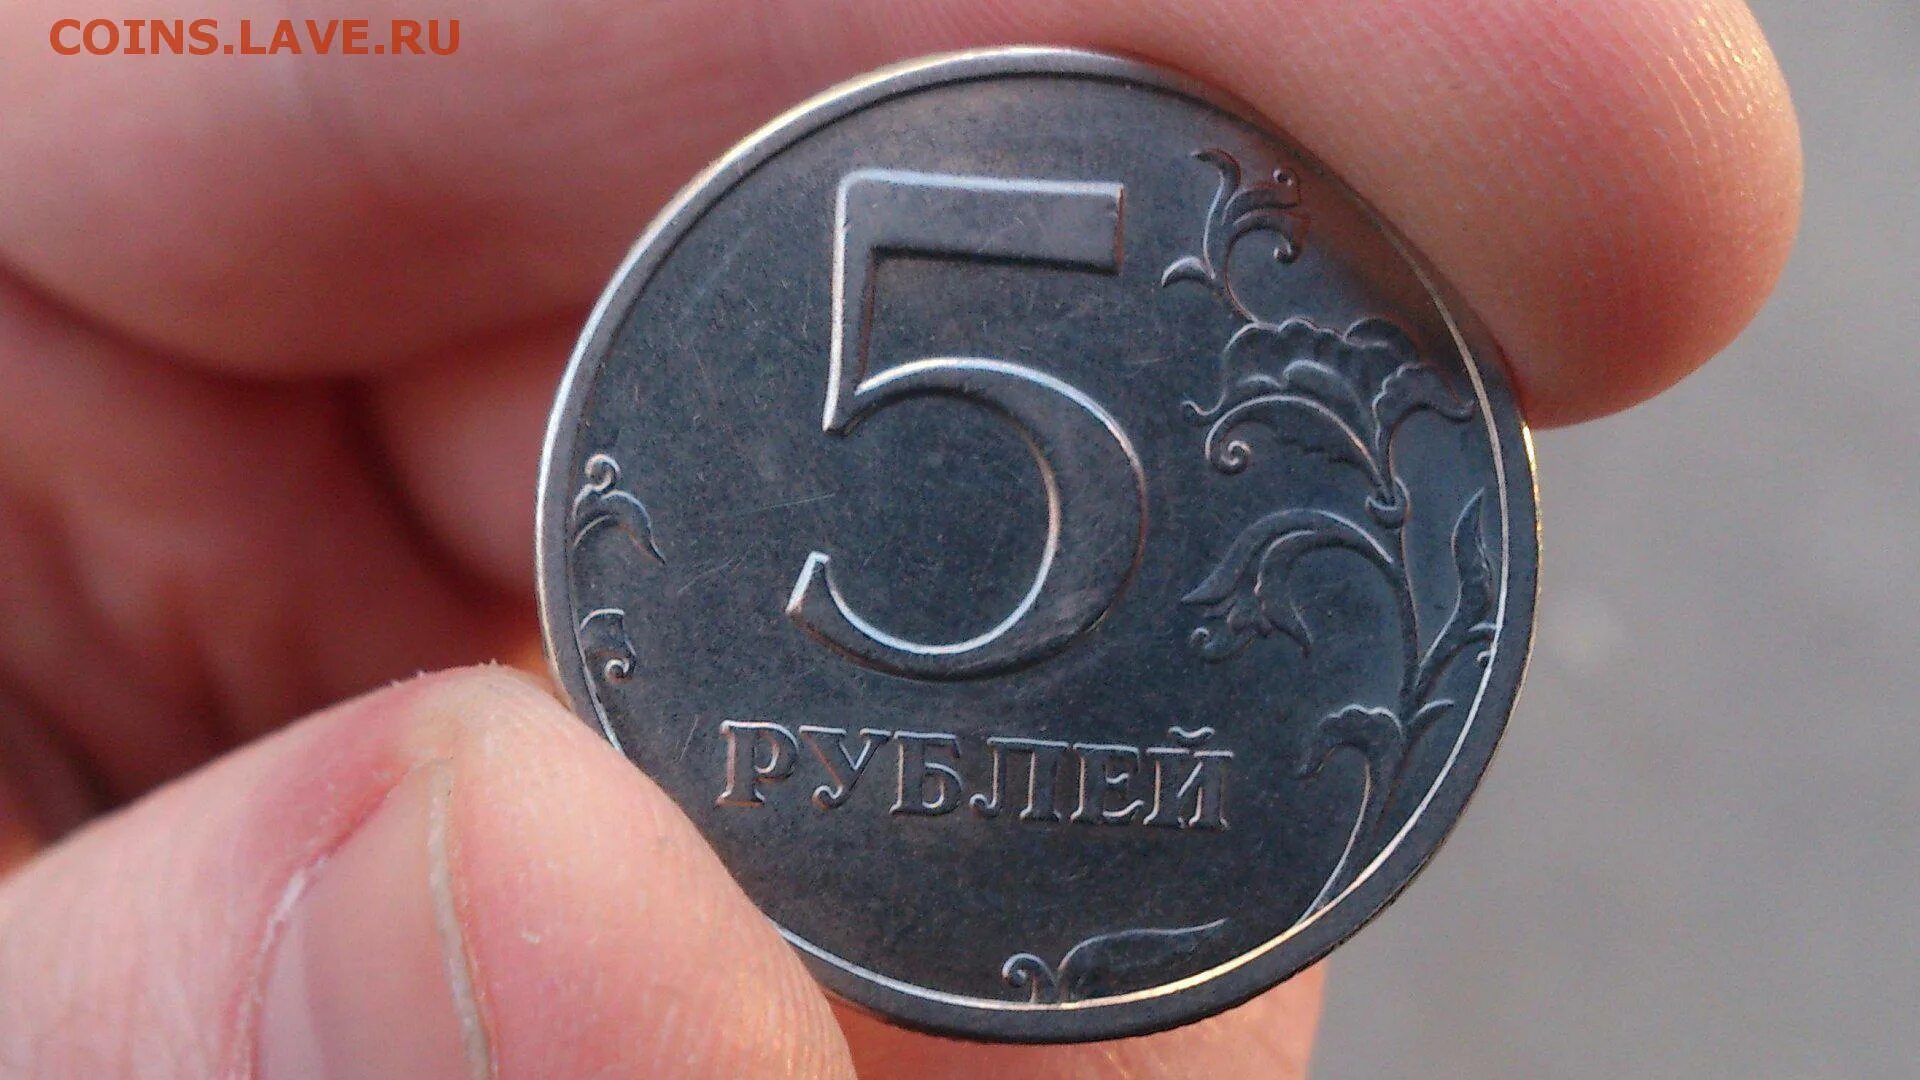 5 рублей с литра. Монеты. Монеты рубли. Монета 5 рублей в руке. Монетка 5 рублей.